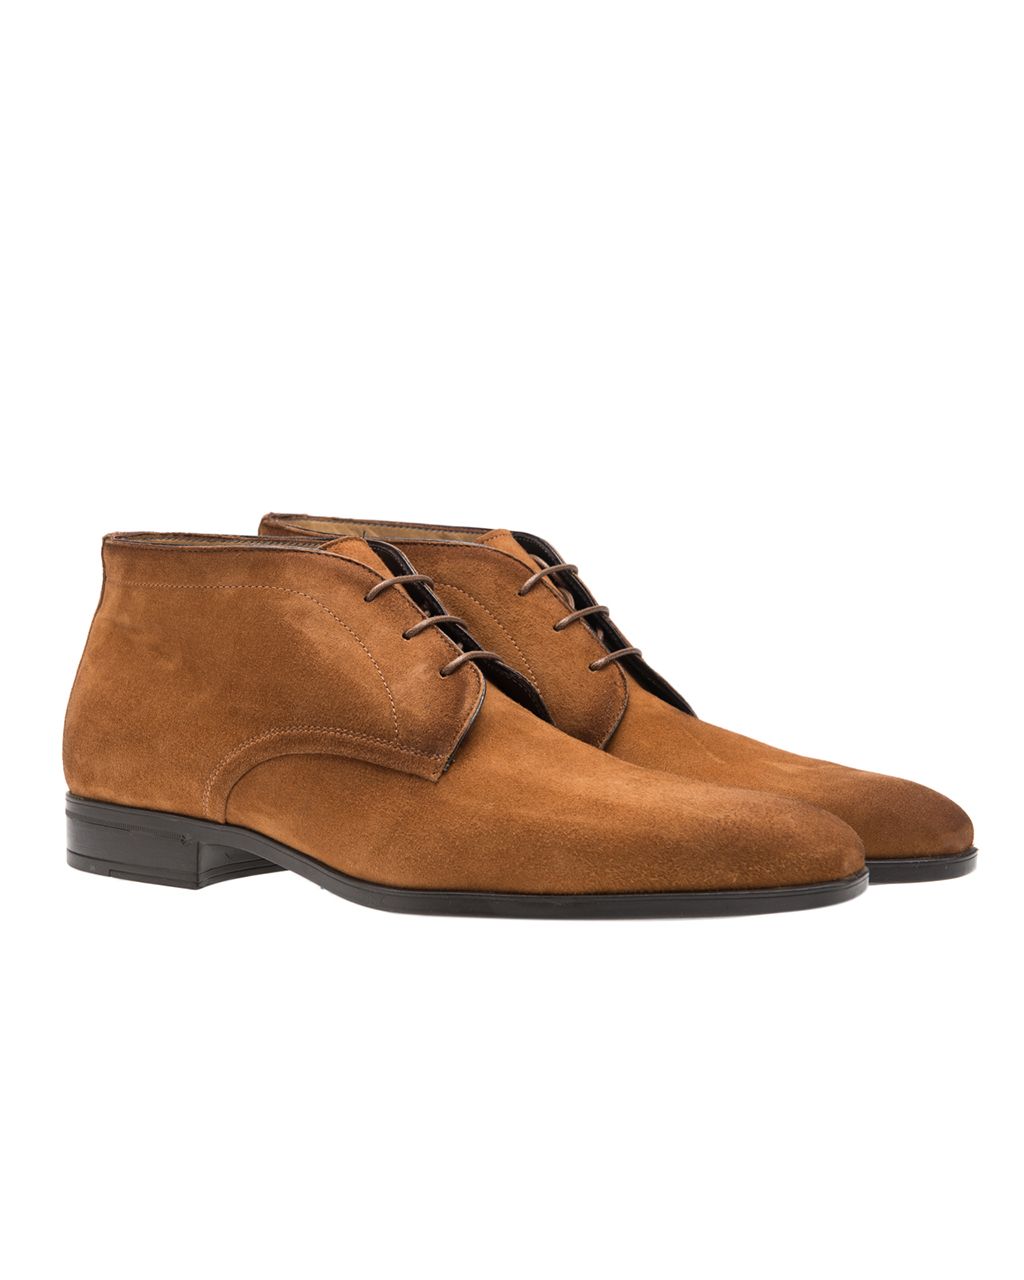 Giorgio Amalfi Geklede schoenen Cognac 052402-001-40